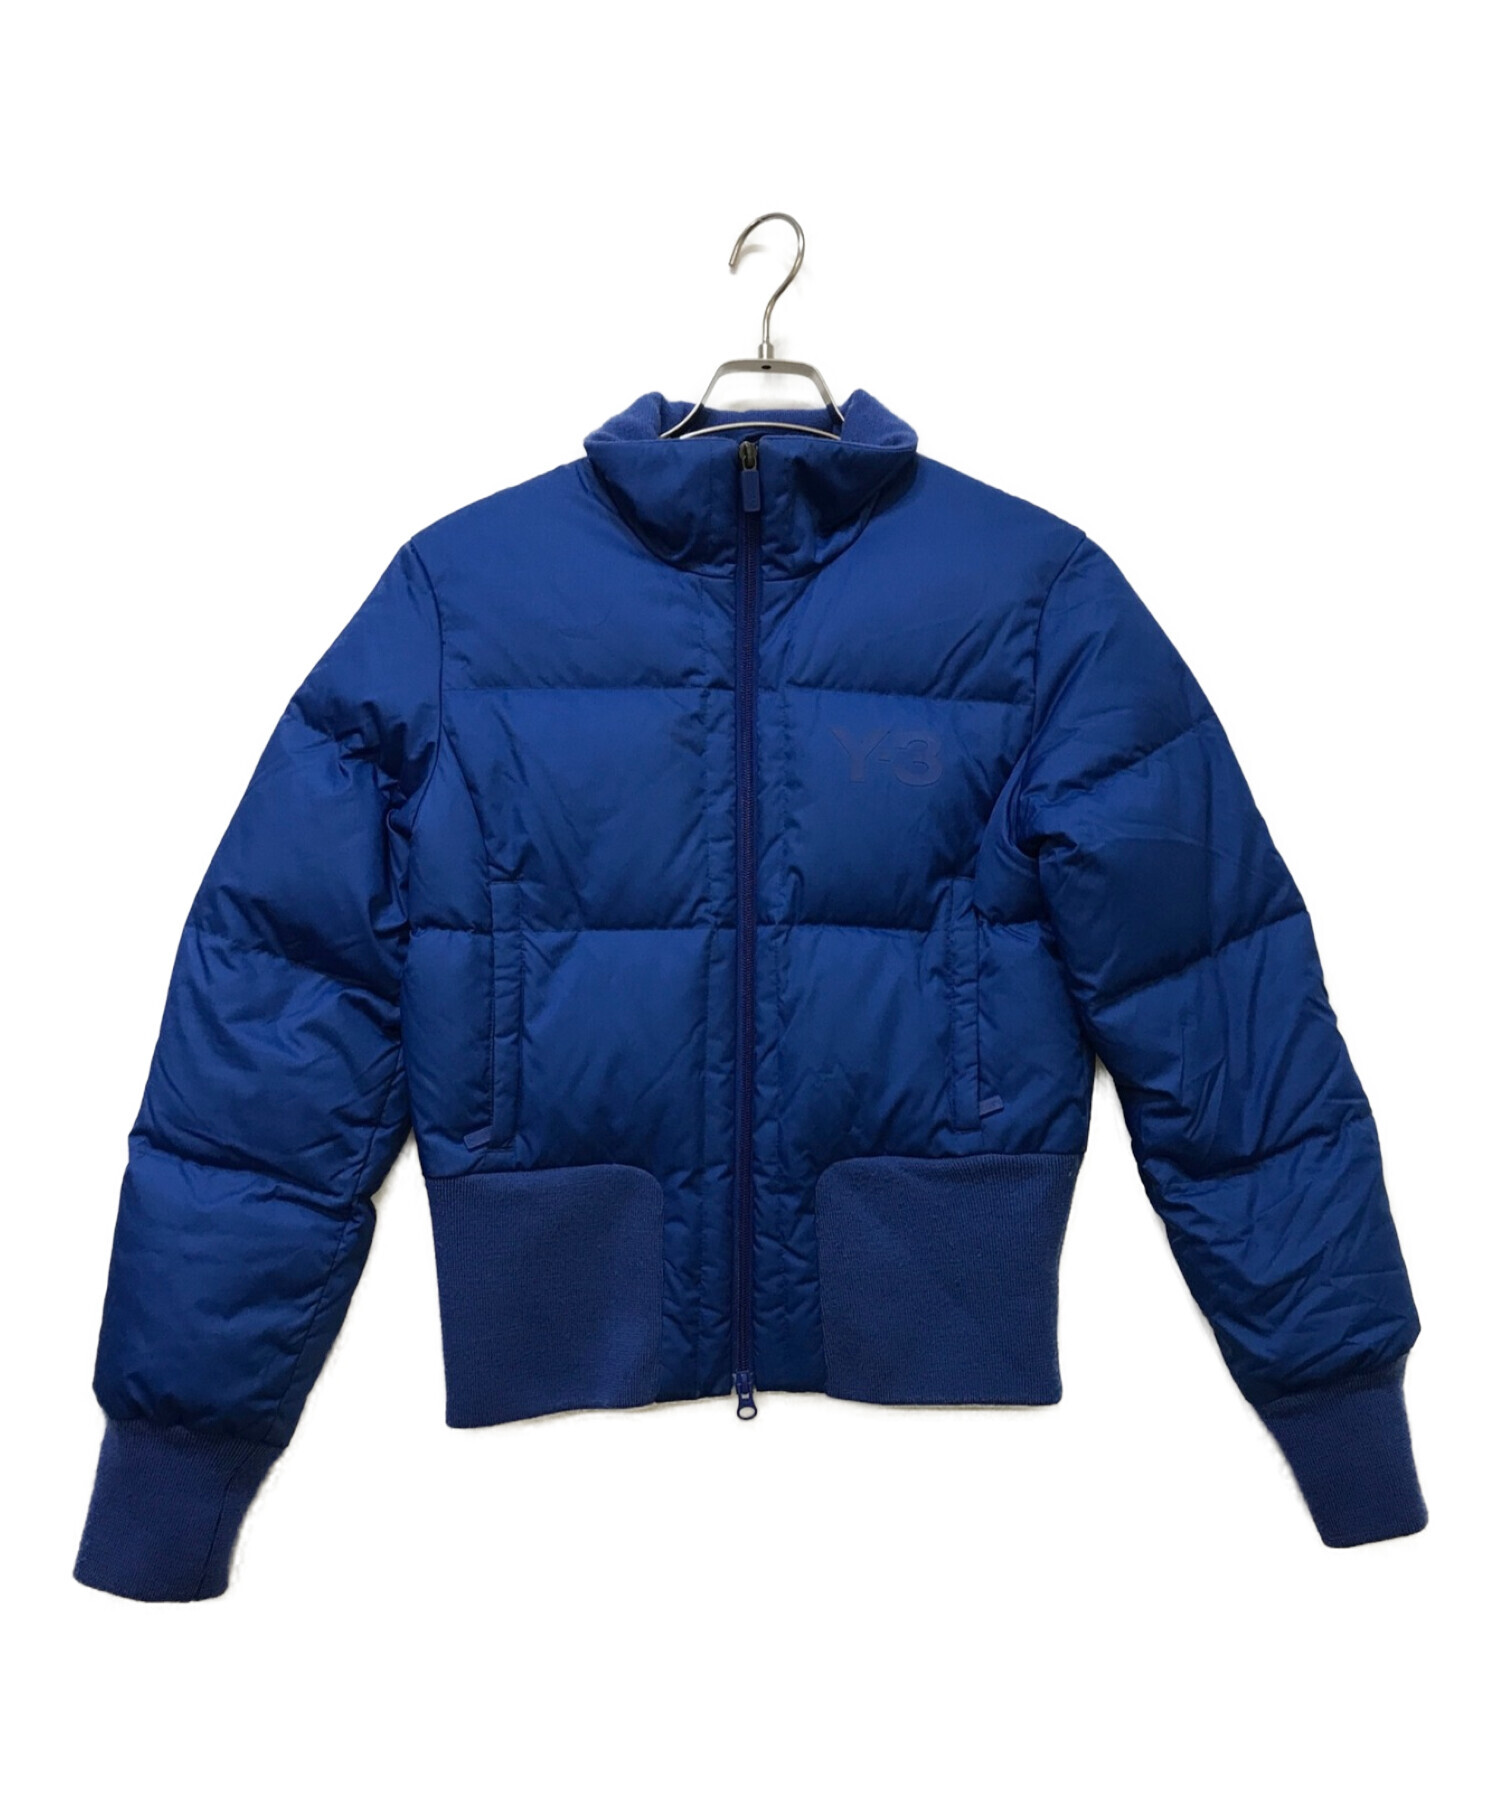 Y-3 (ワイスリー) ダウンジャケット ブルー サイズ:S